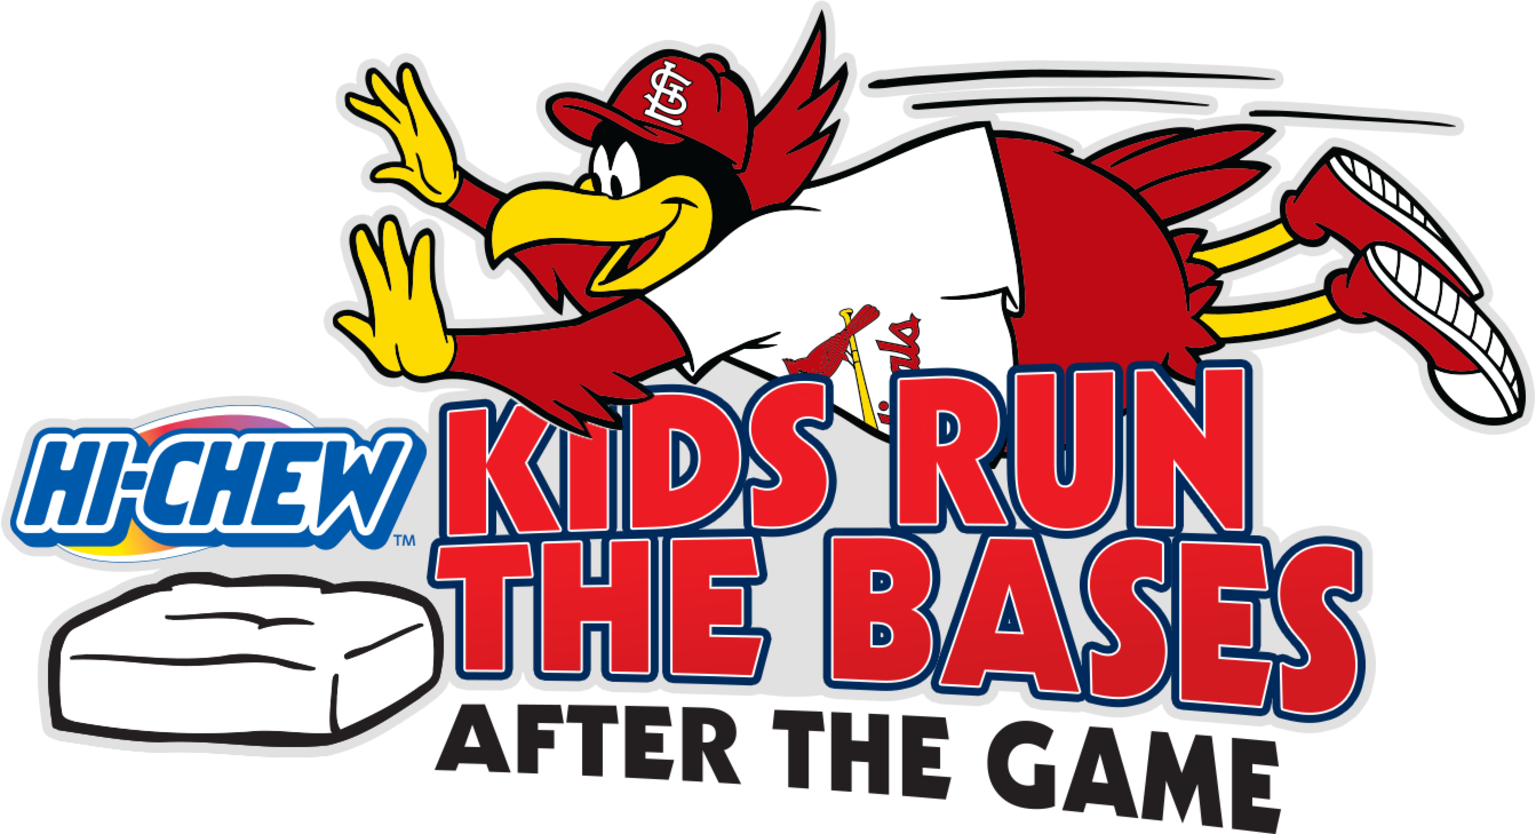 St. Louis Cardinals baseball promotional giveaways calendar